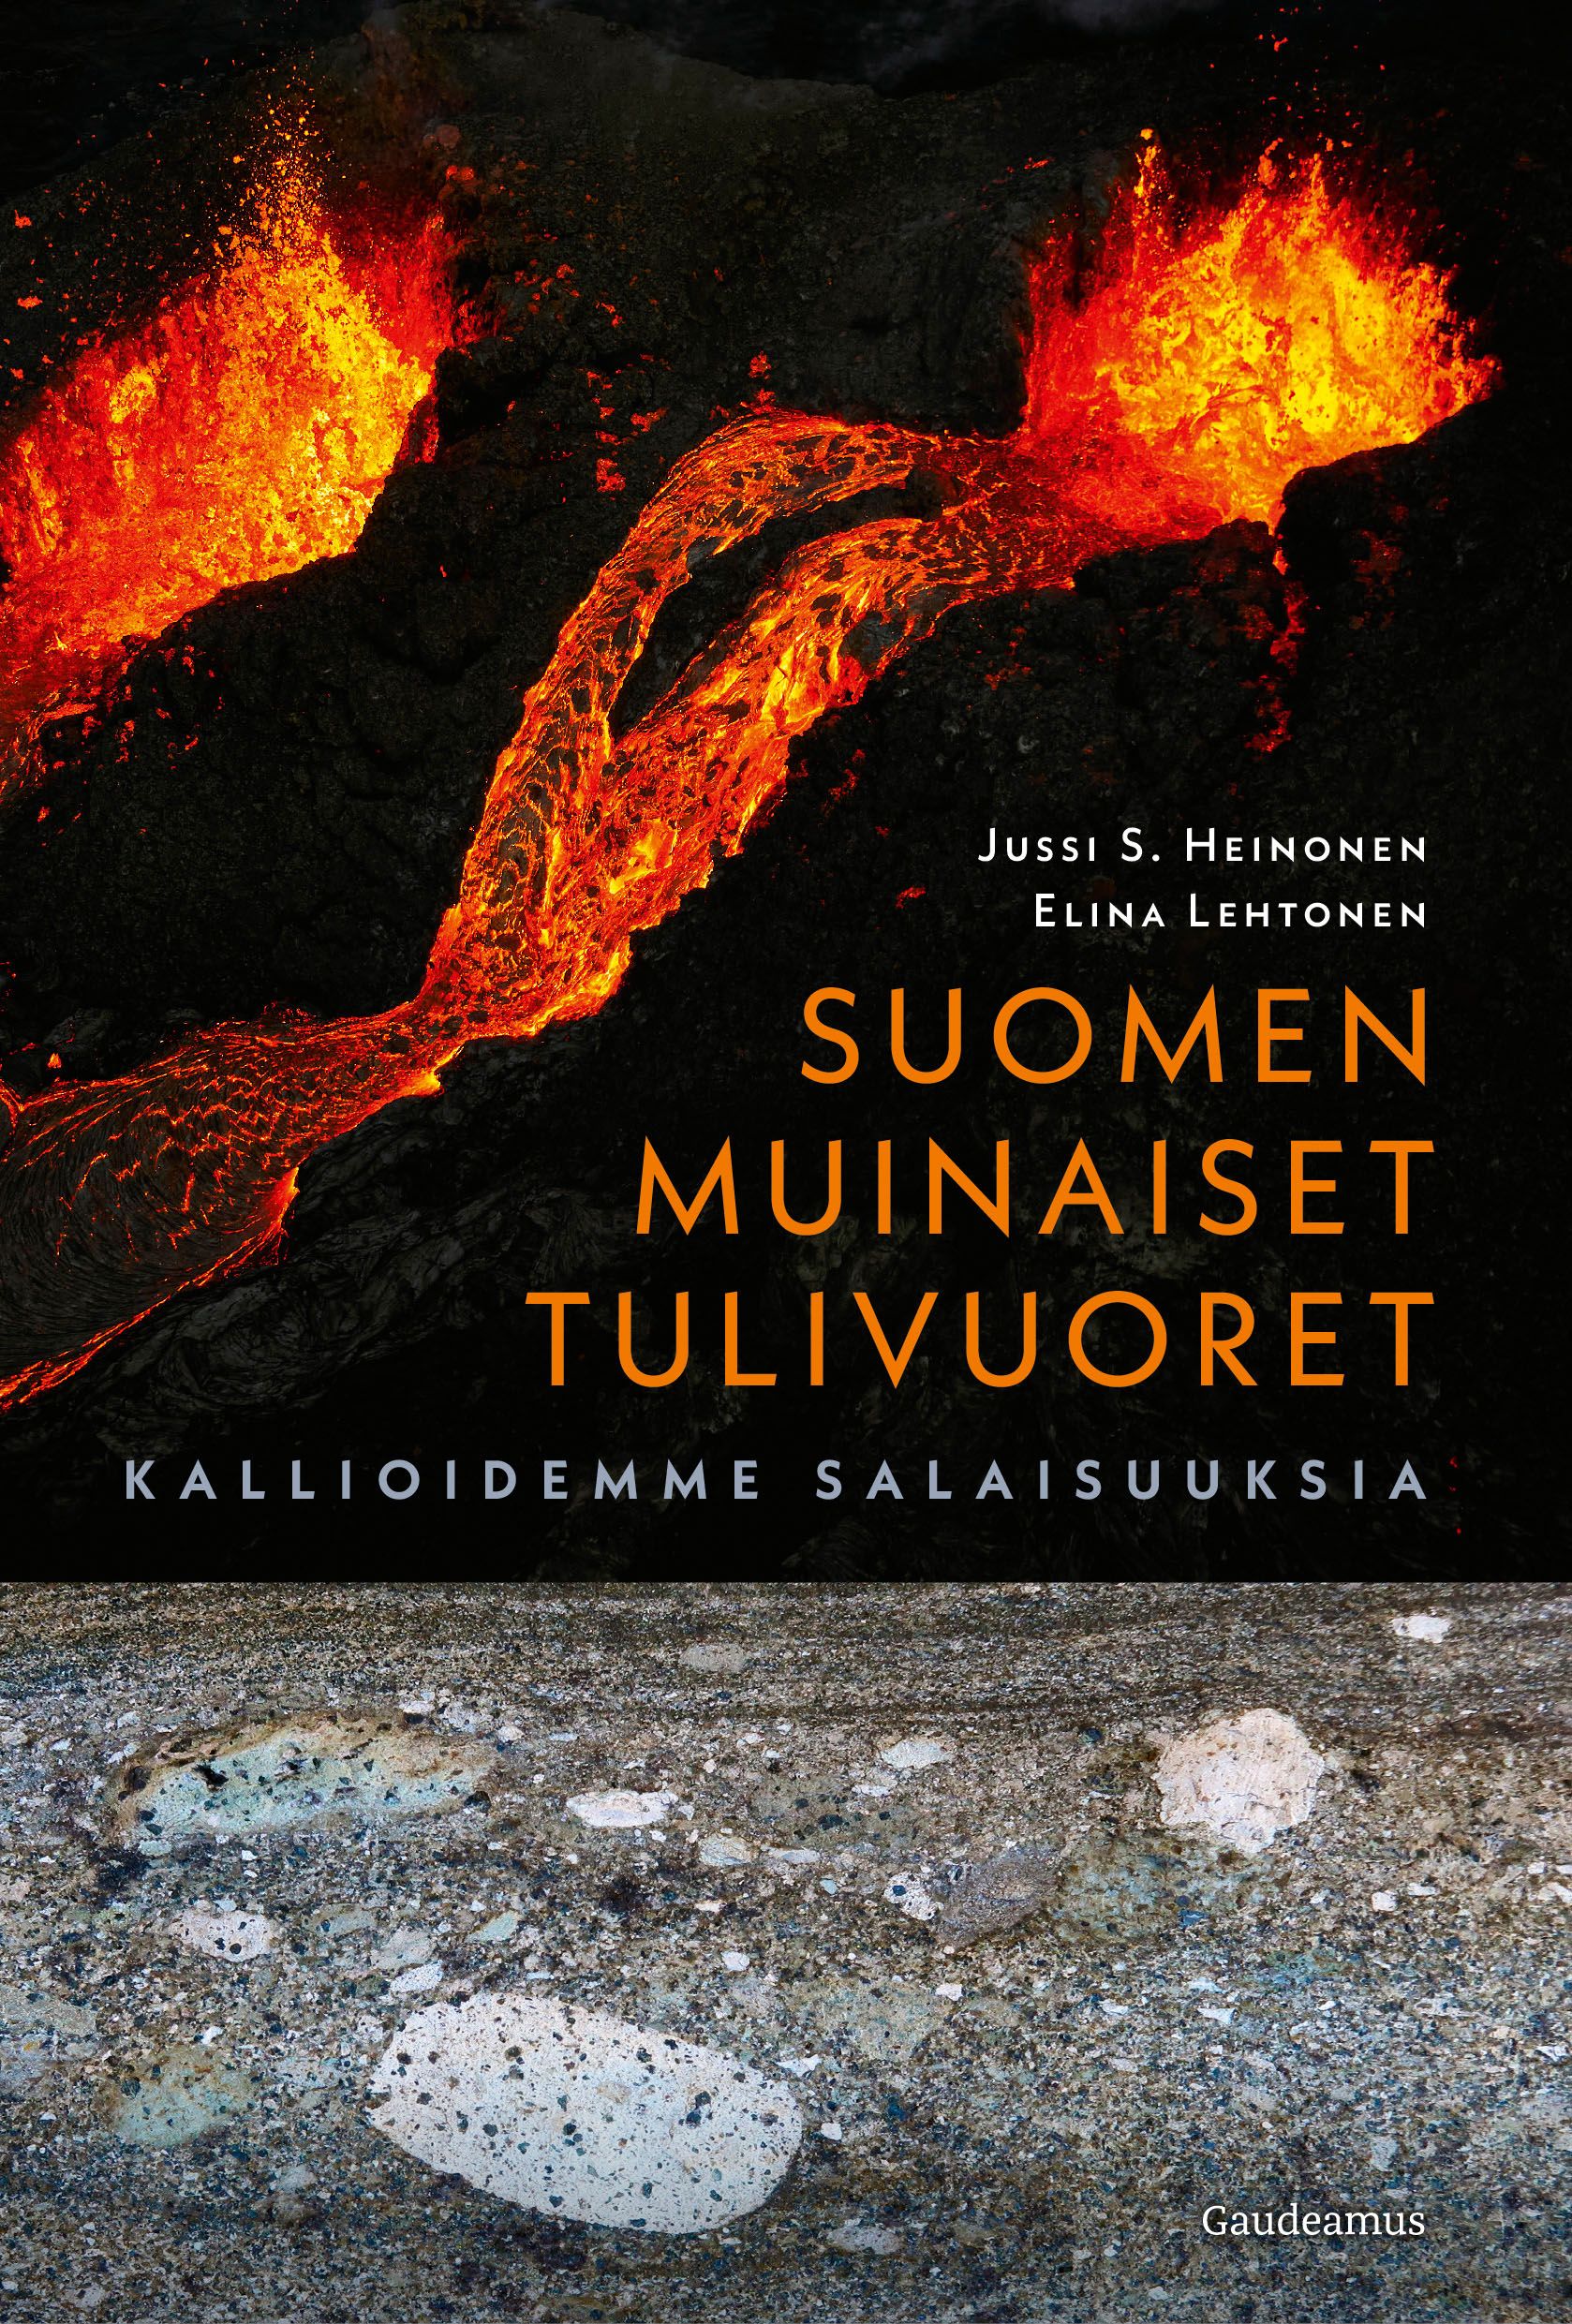 Jussi S. Heinonen & Elina Lehtonen : Suomen muinaiset tulivuoret